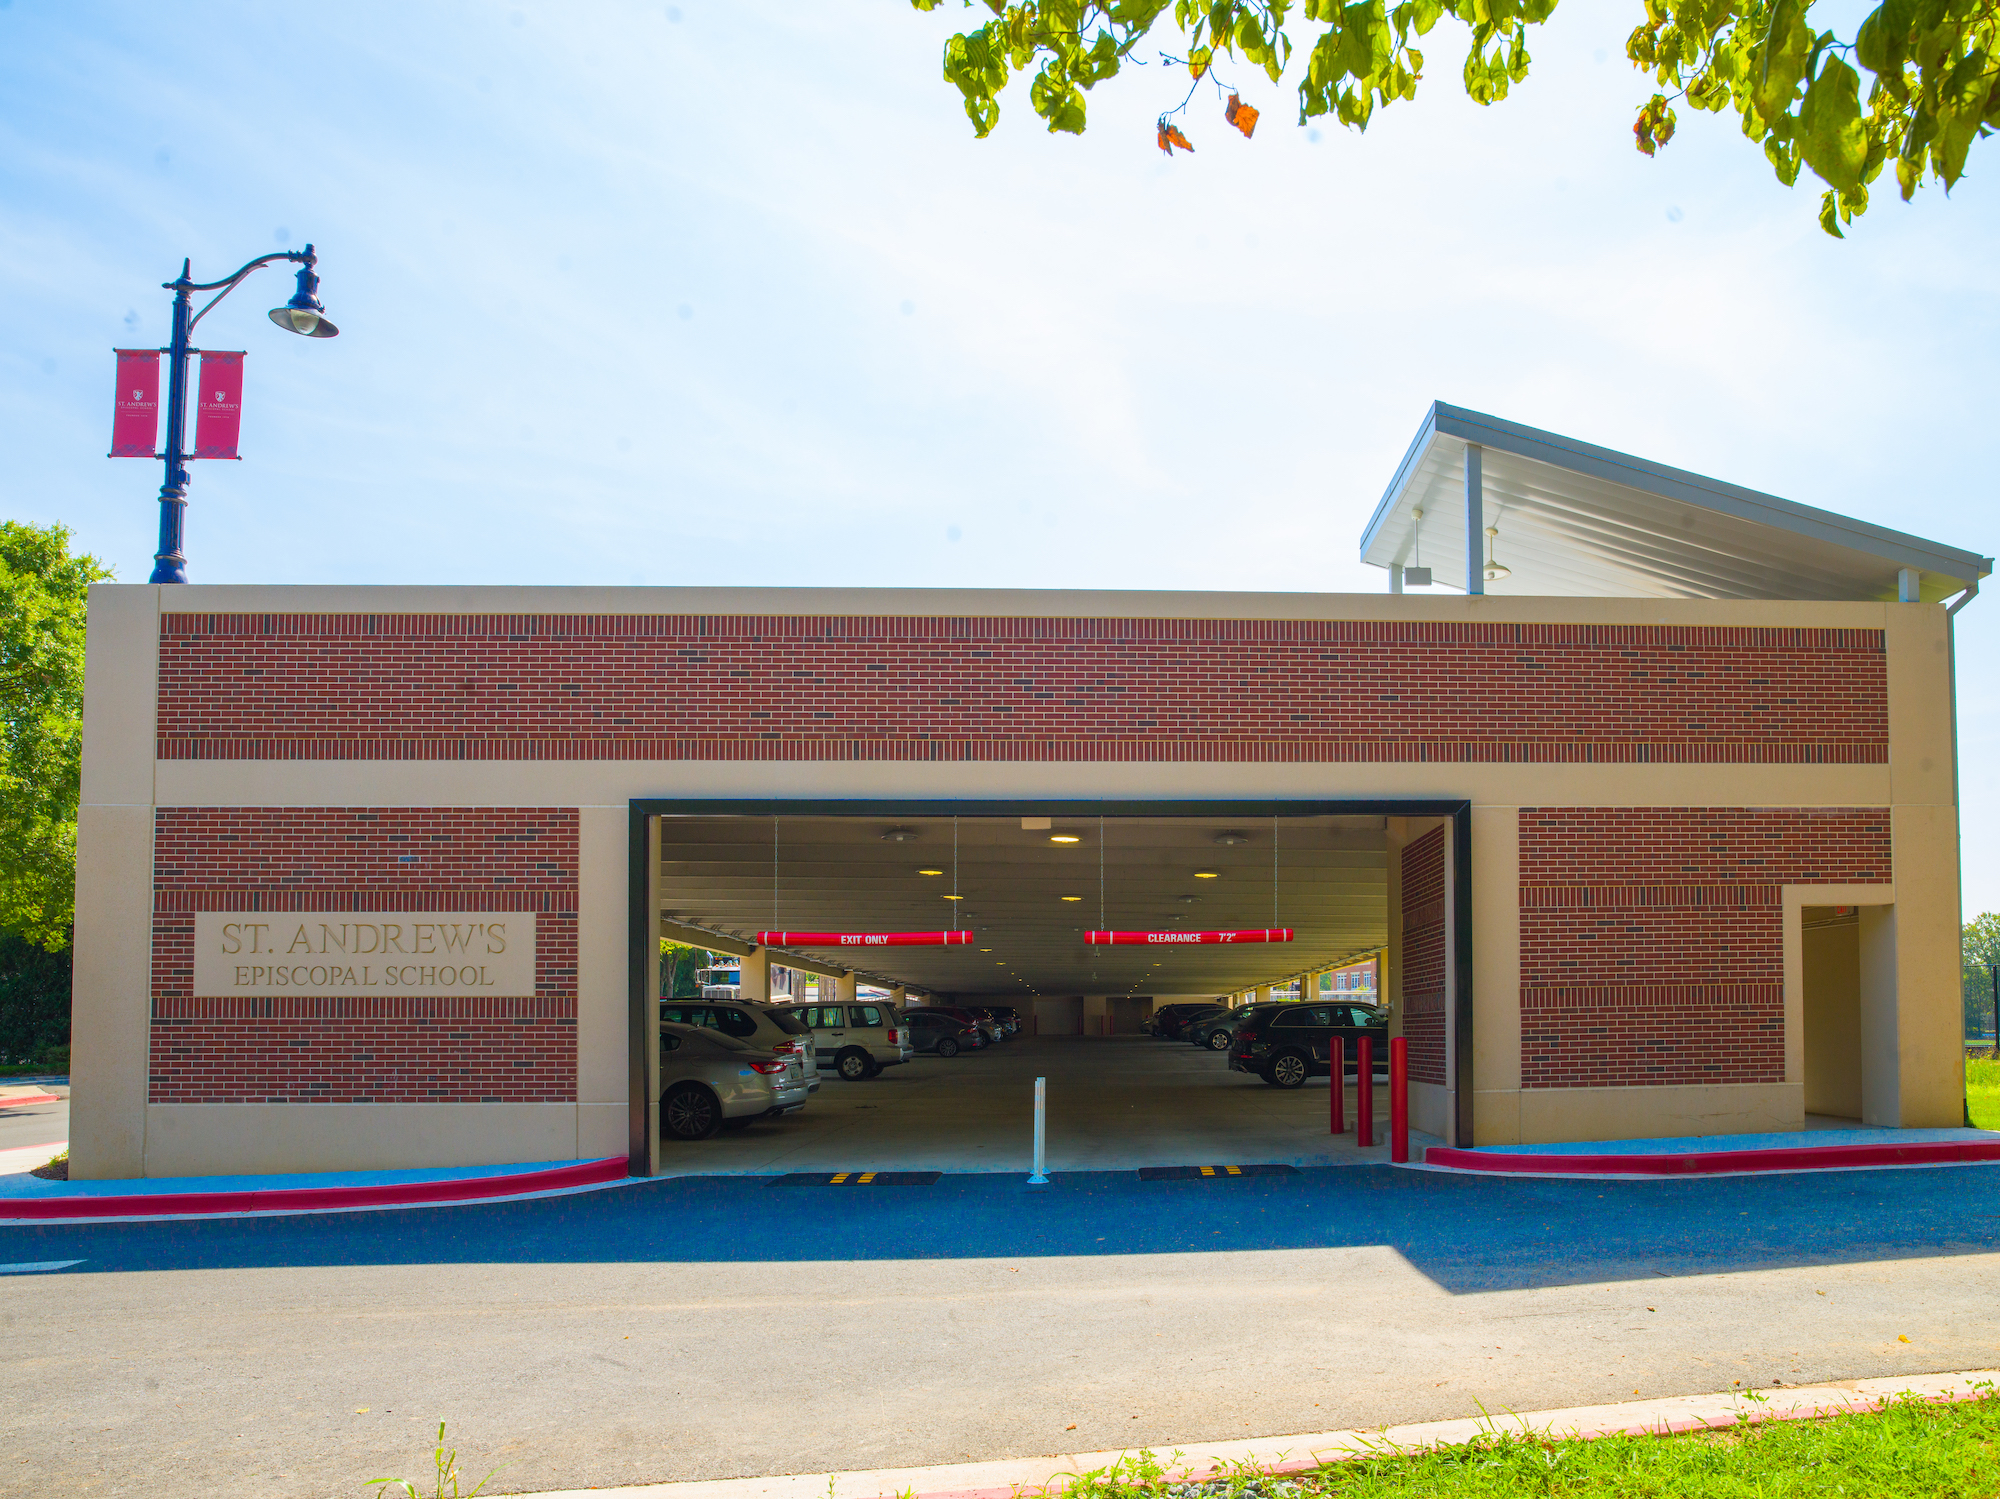 St. Andrews Episcopal School parking garage.